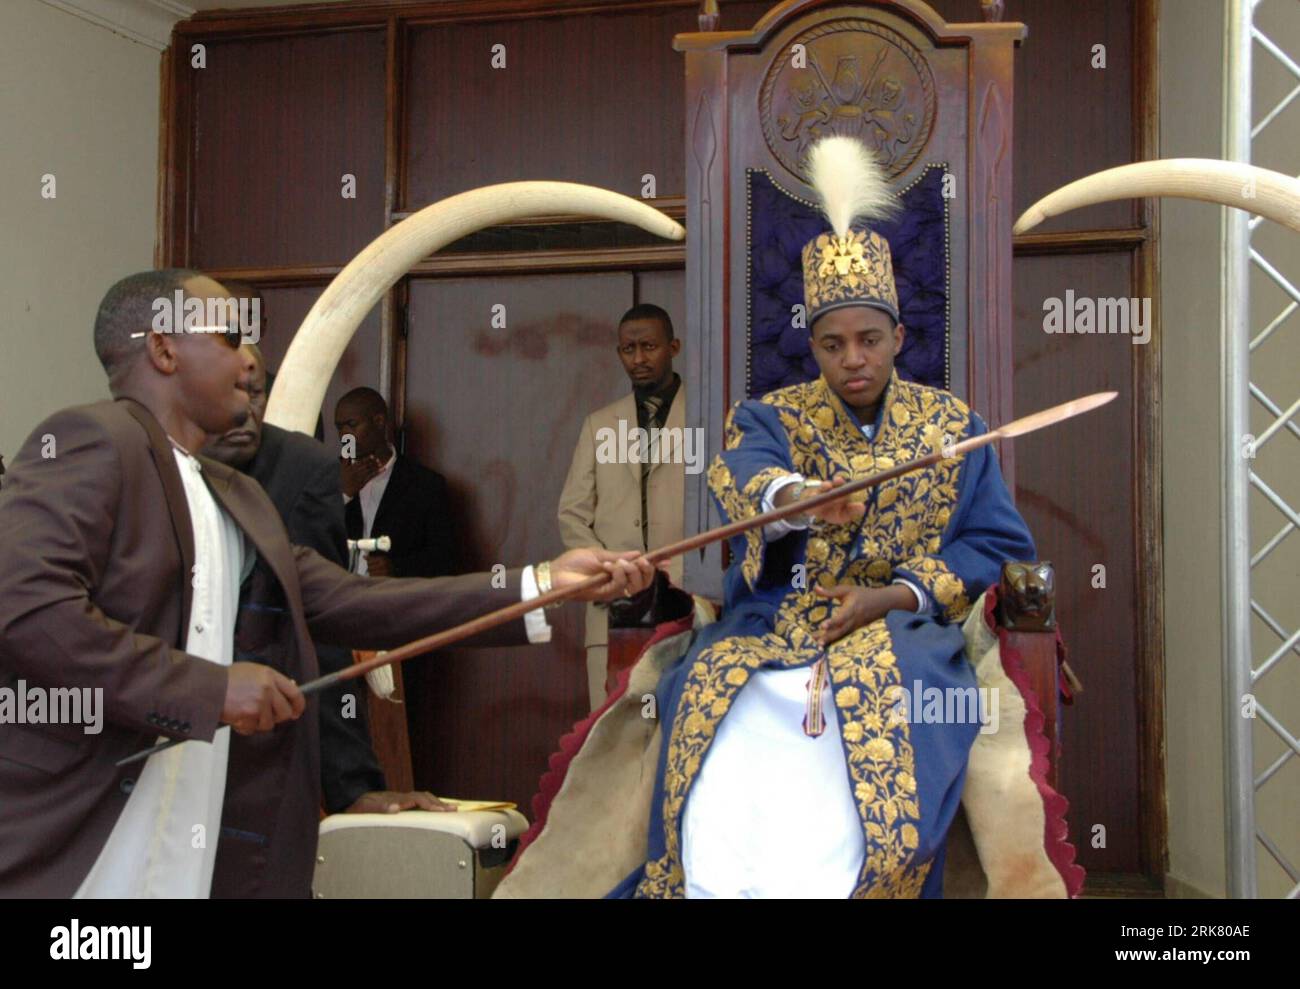 Bildnummer : 53947901 Datum : 17.04.2010 Copyright : imago/Xinhua (100417) -- KABAROLE, 17 avril 2010 (Xinhua) -- le roi Oyo Nyimba Kabamba Iguru (R) assiste à sa cérémonie de couronnement au palais Karuzika à fort Portal, dans l'ouest de l'Ouganda, le 17 avril 2010, à l'occasion de son 18e anniversaire. Oyo a reçu le plein pouvoir samedi pour administrer son royaume après avoir eu 18 ans. À l'âge de trois ans et demi, Oyo monte sur le trône en 1995 pour devenir le 12e souverain du Royaume de Toro, âgé de plus de 180 ans, dans l'ouest de l'Ouganda, faisant de lui le plus jeune monarque régnant au monde. (Xinhua/Samuel Egadu Banque D'Images